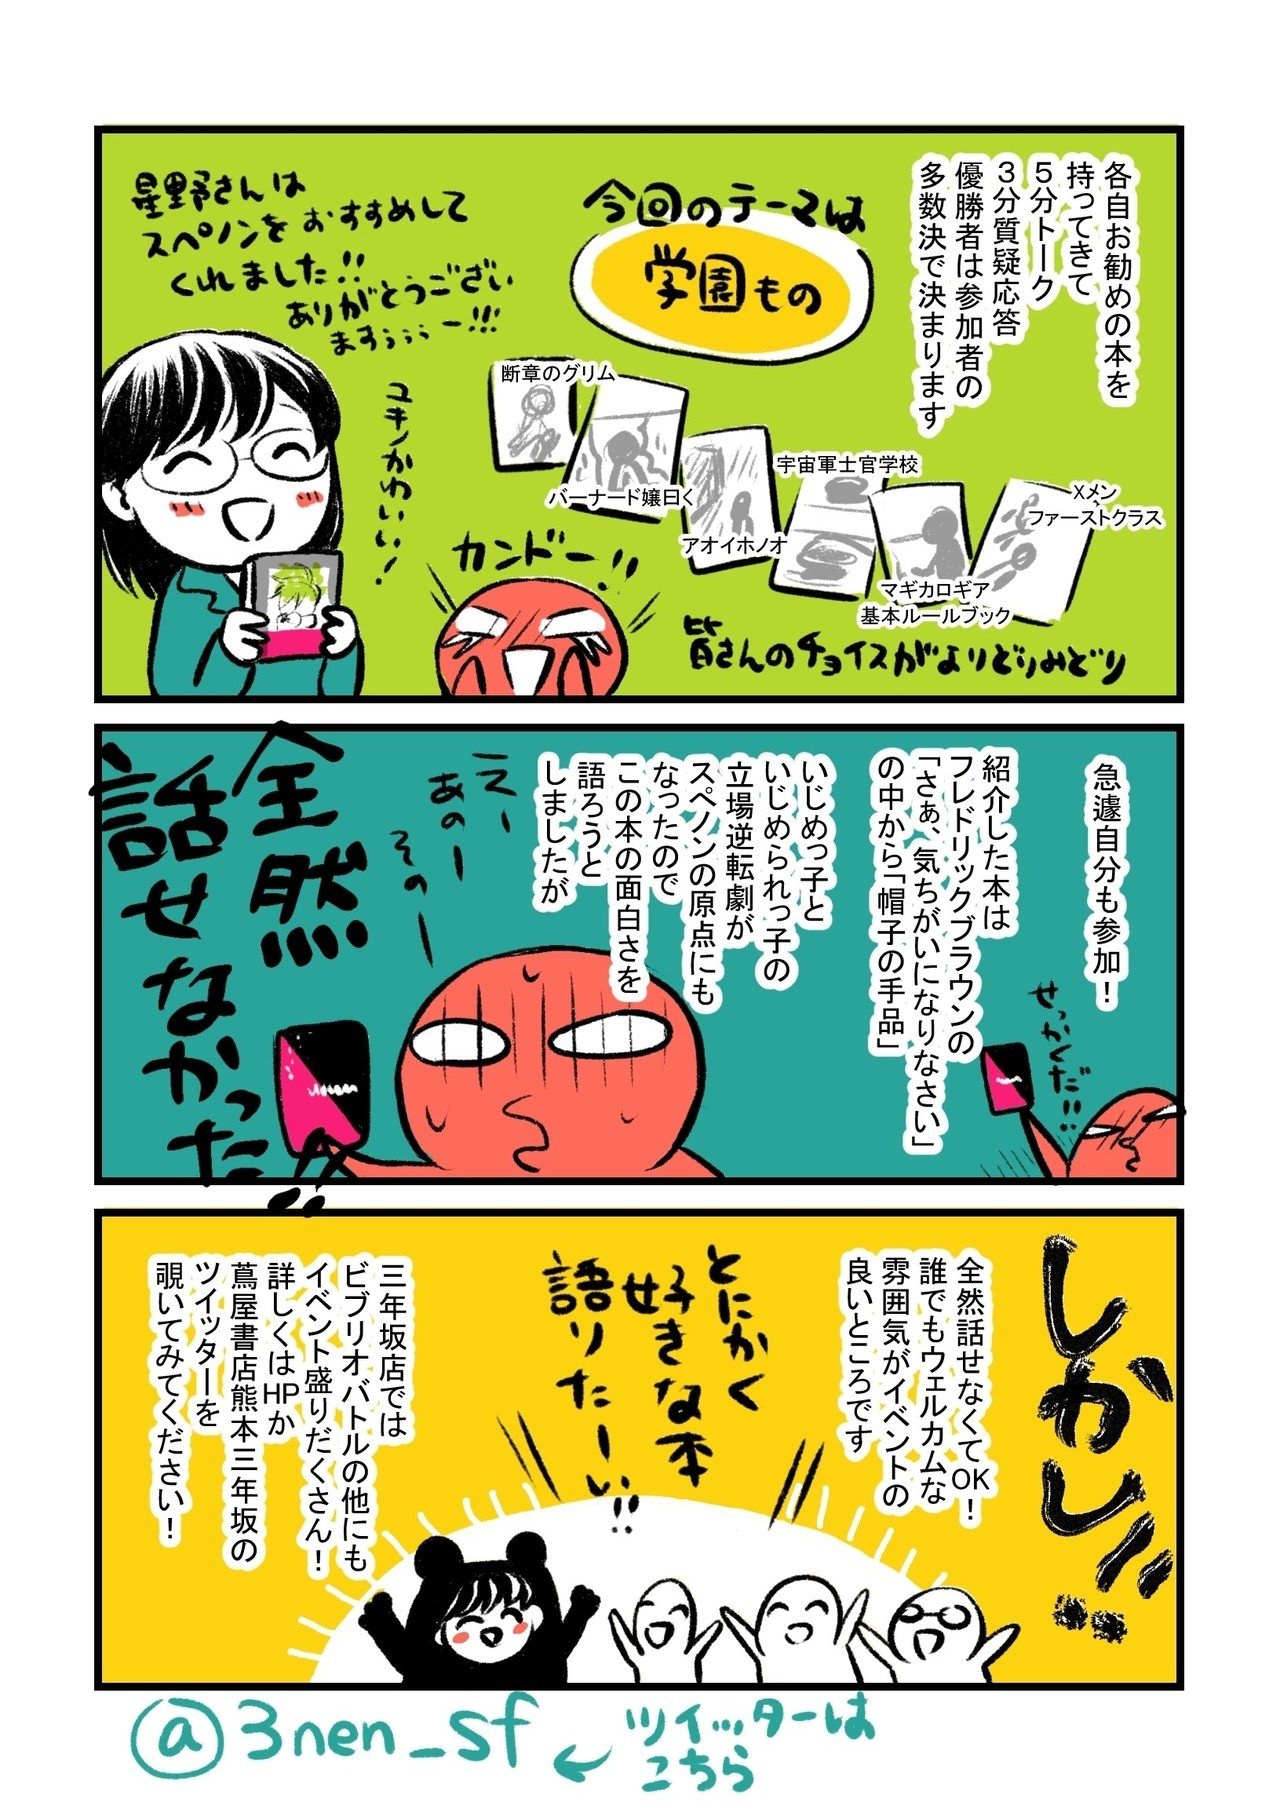 熊本旅行漫画_004